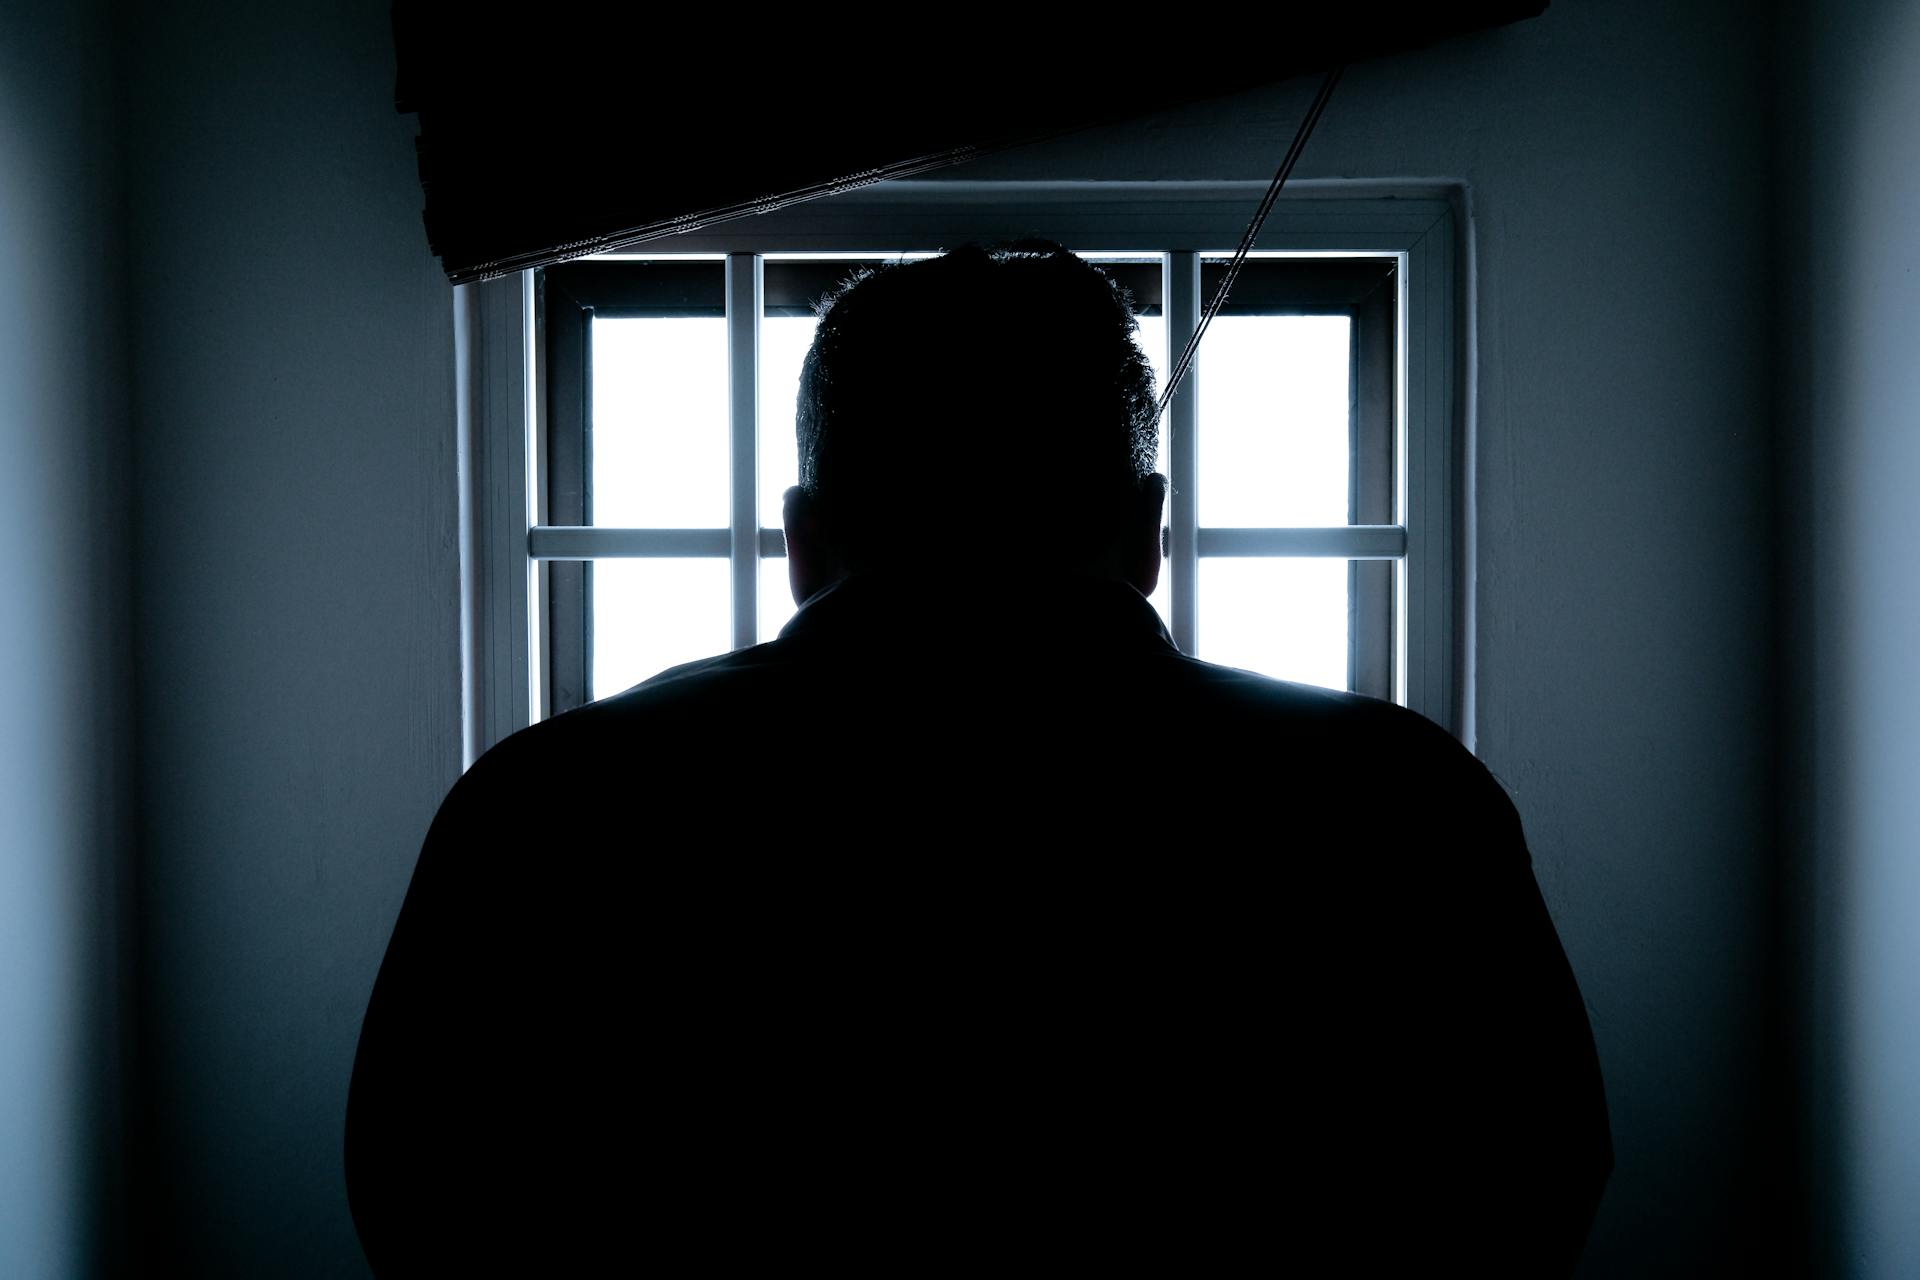 Silueta de un hombre sentado en la cárcel | Fuente: Pexels